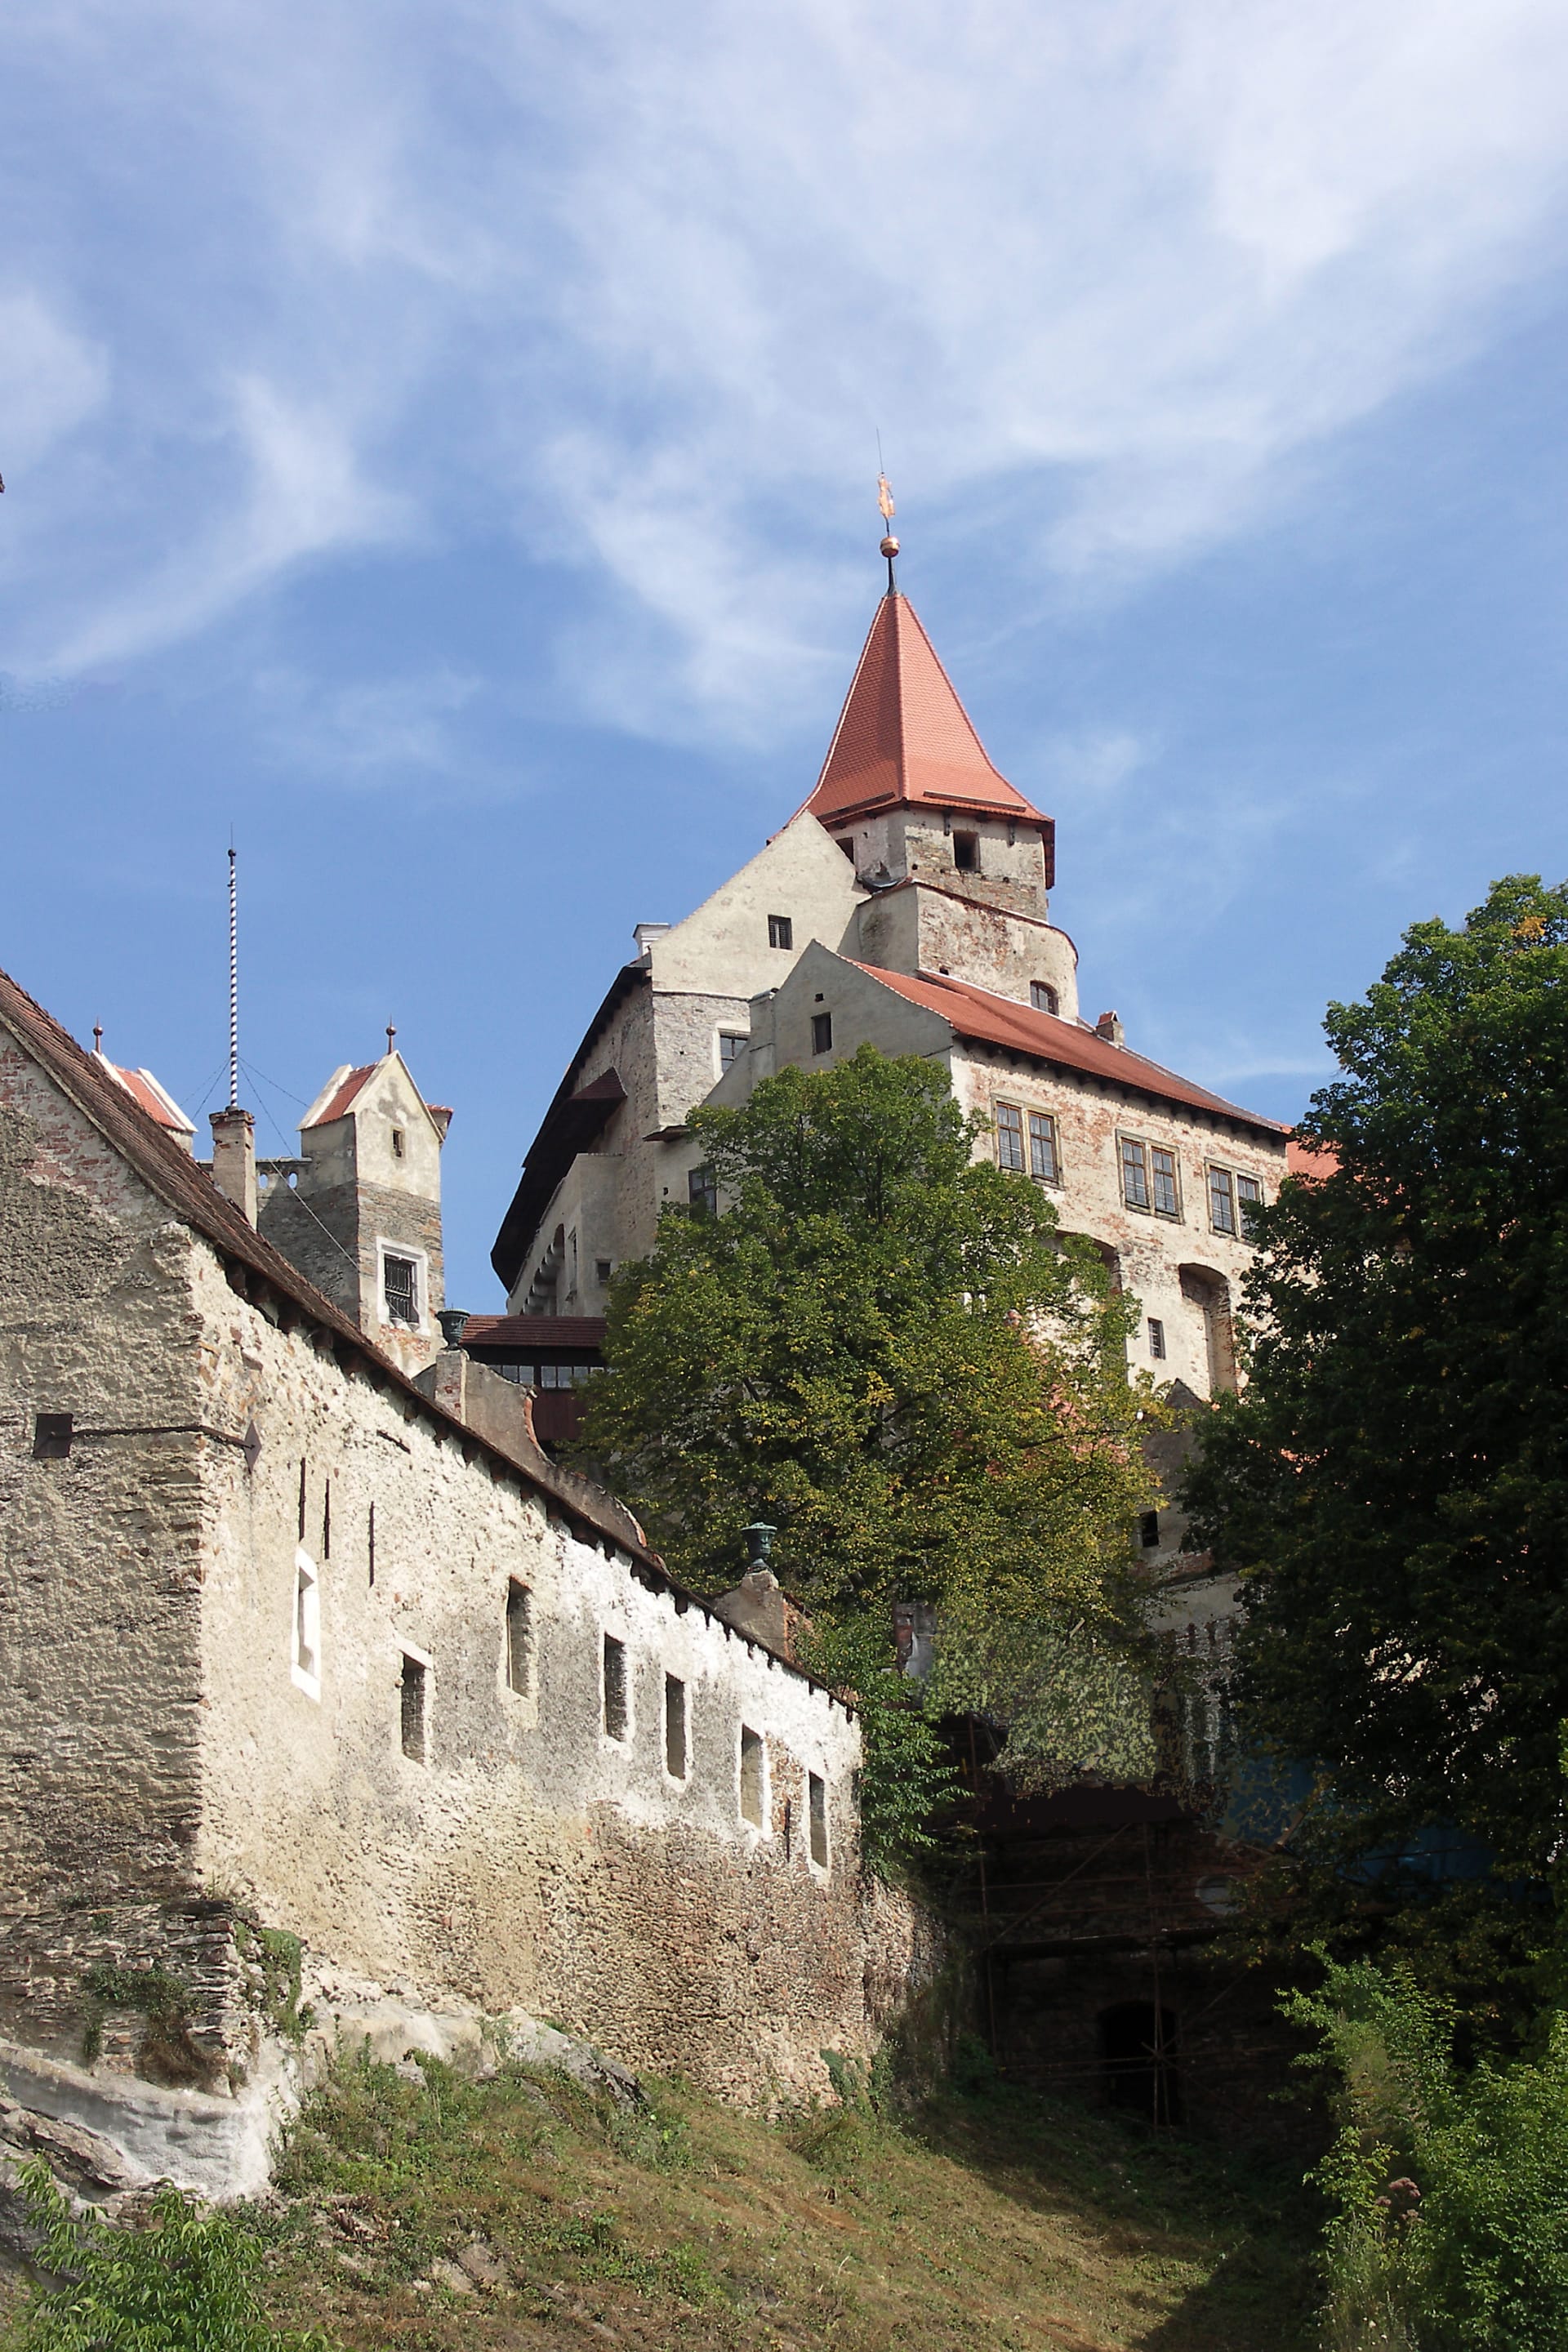 Díky svému unikátnímu vzhledu patří Pernštejn k nejvýznamnějším moravským hradům a objevil se hned v několika filmech a pohádkách. Někdy se mu říká „mramorový“, protože byl při jeho stavbě hojně využit místní bílý nedvědický mramor. 